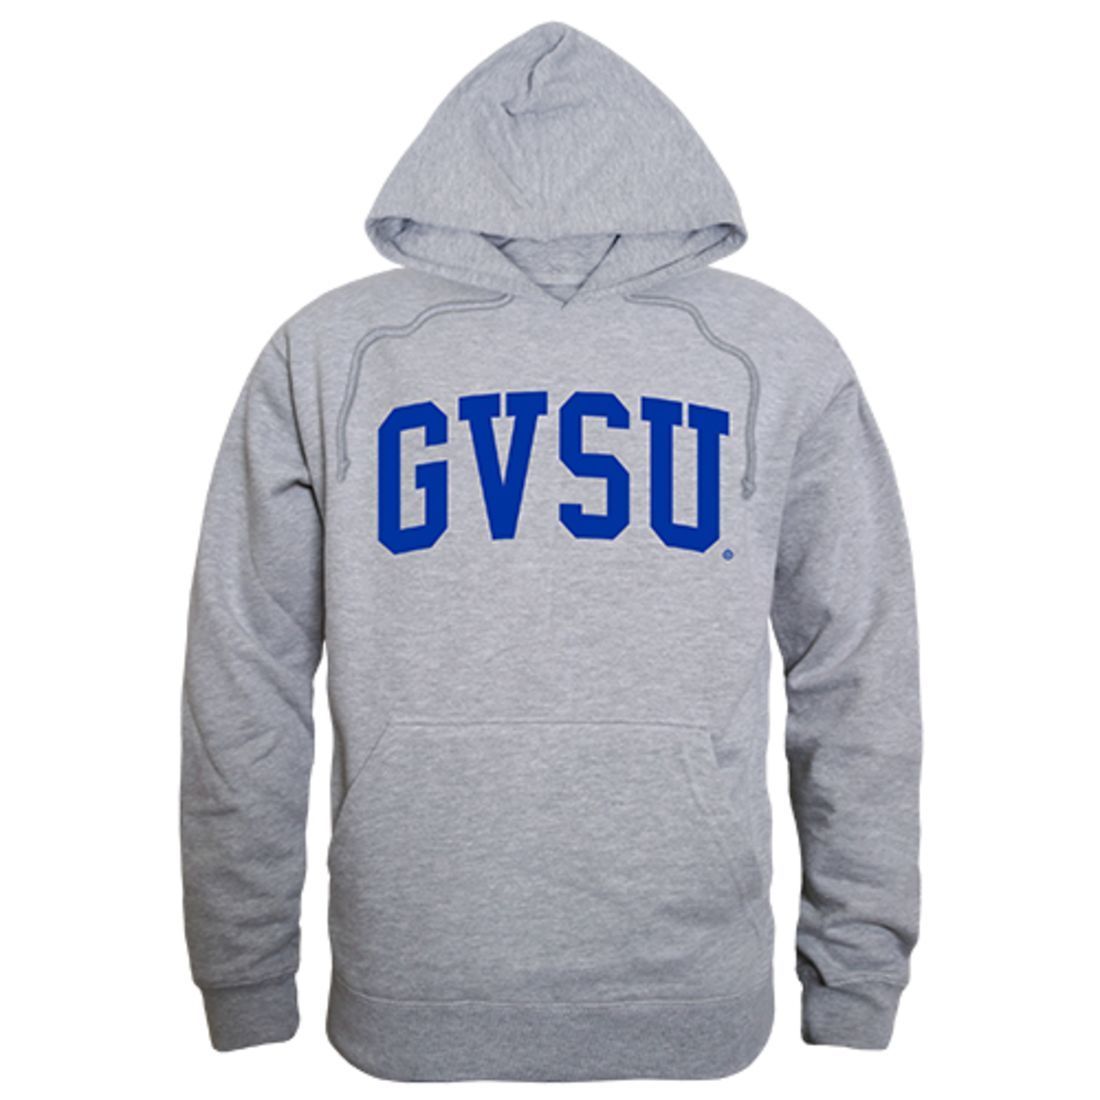 GVSU Grand Valley State University Game Day Hoodie Sweatshirt Heather Grey-Campus-Wardrobe